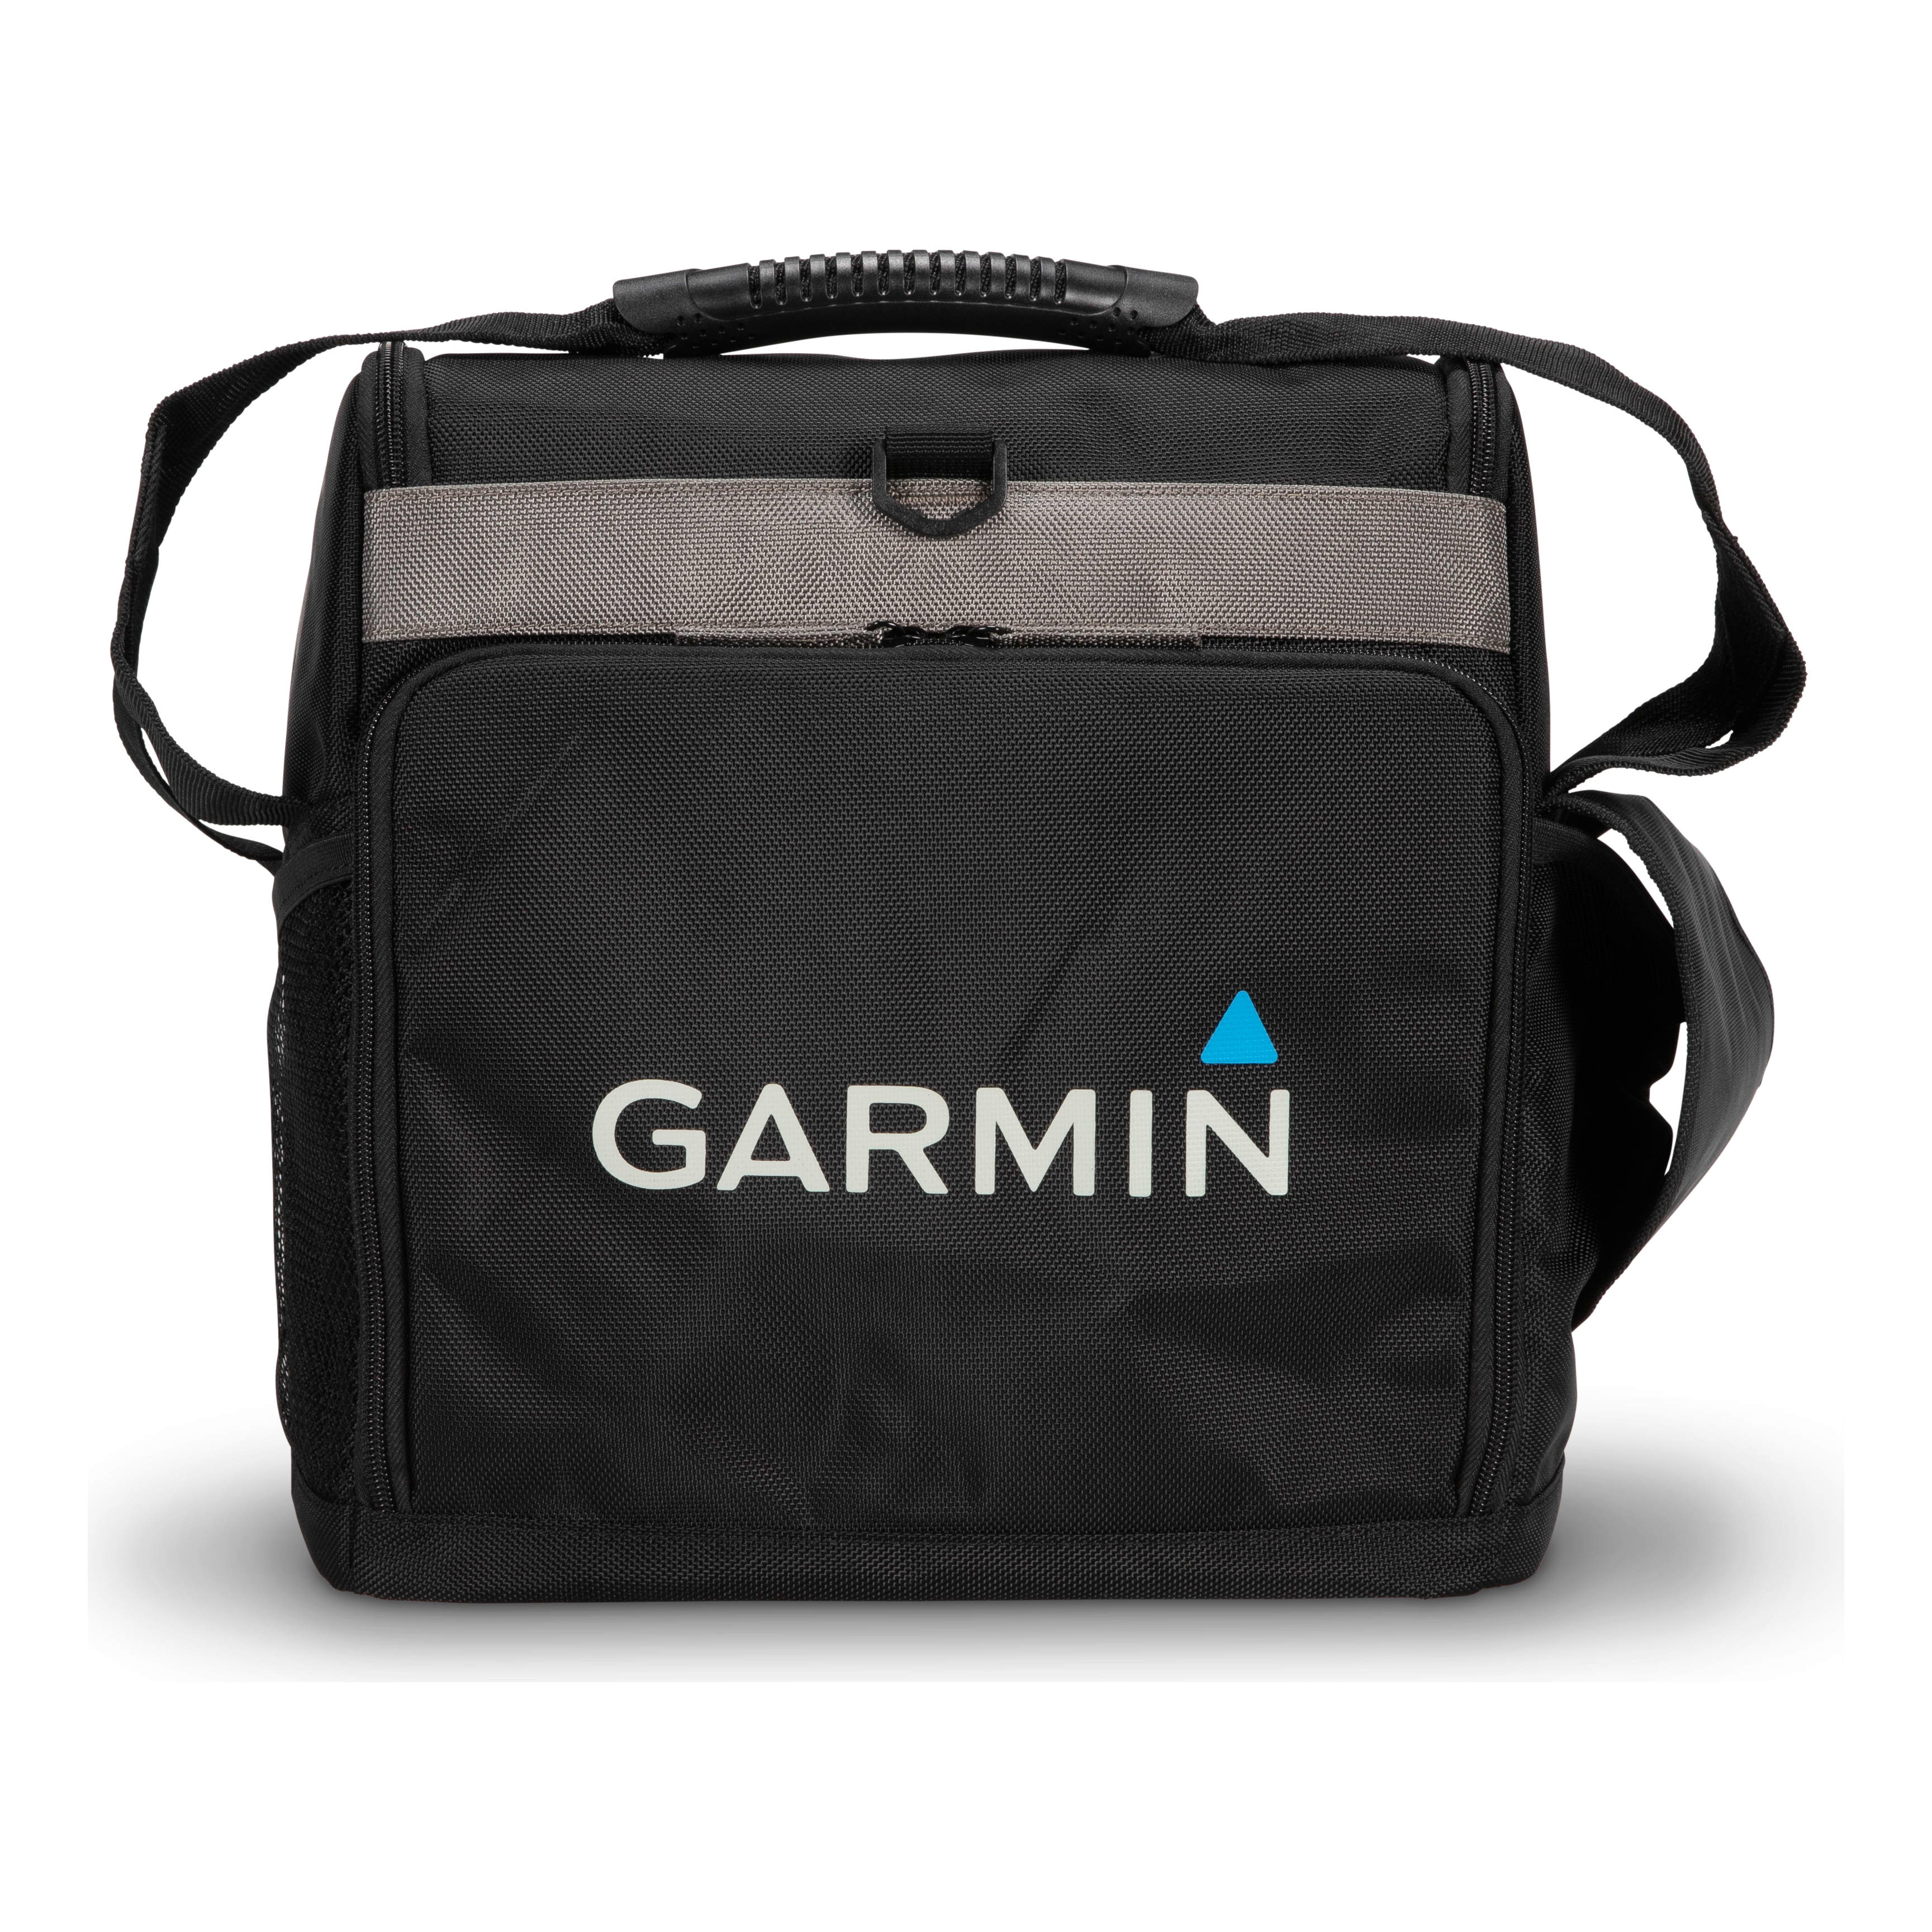 Garmin Extra Large Bag